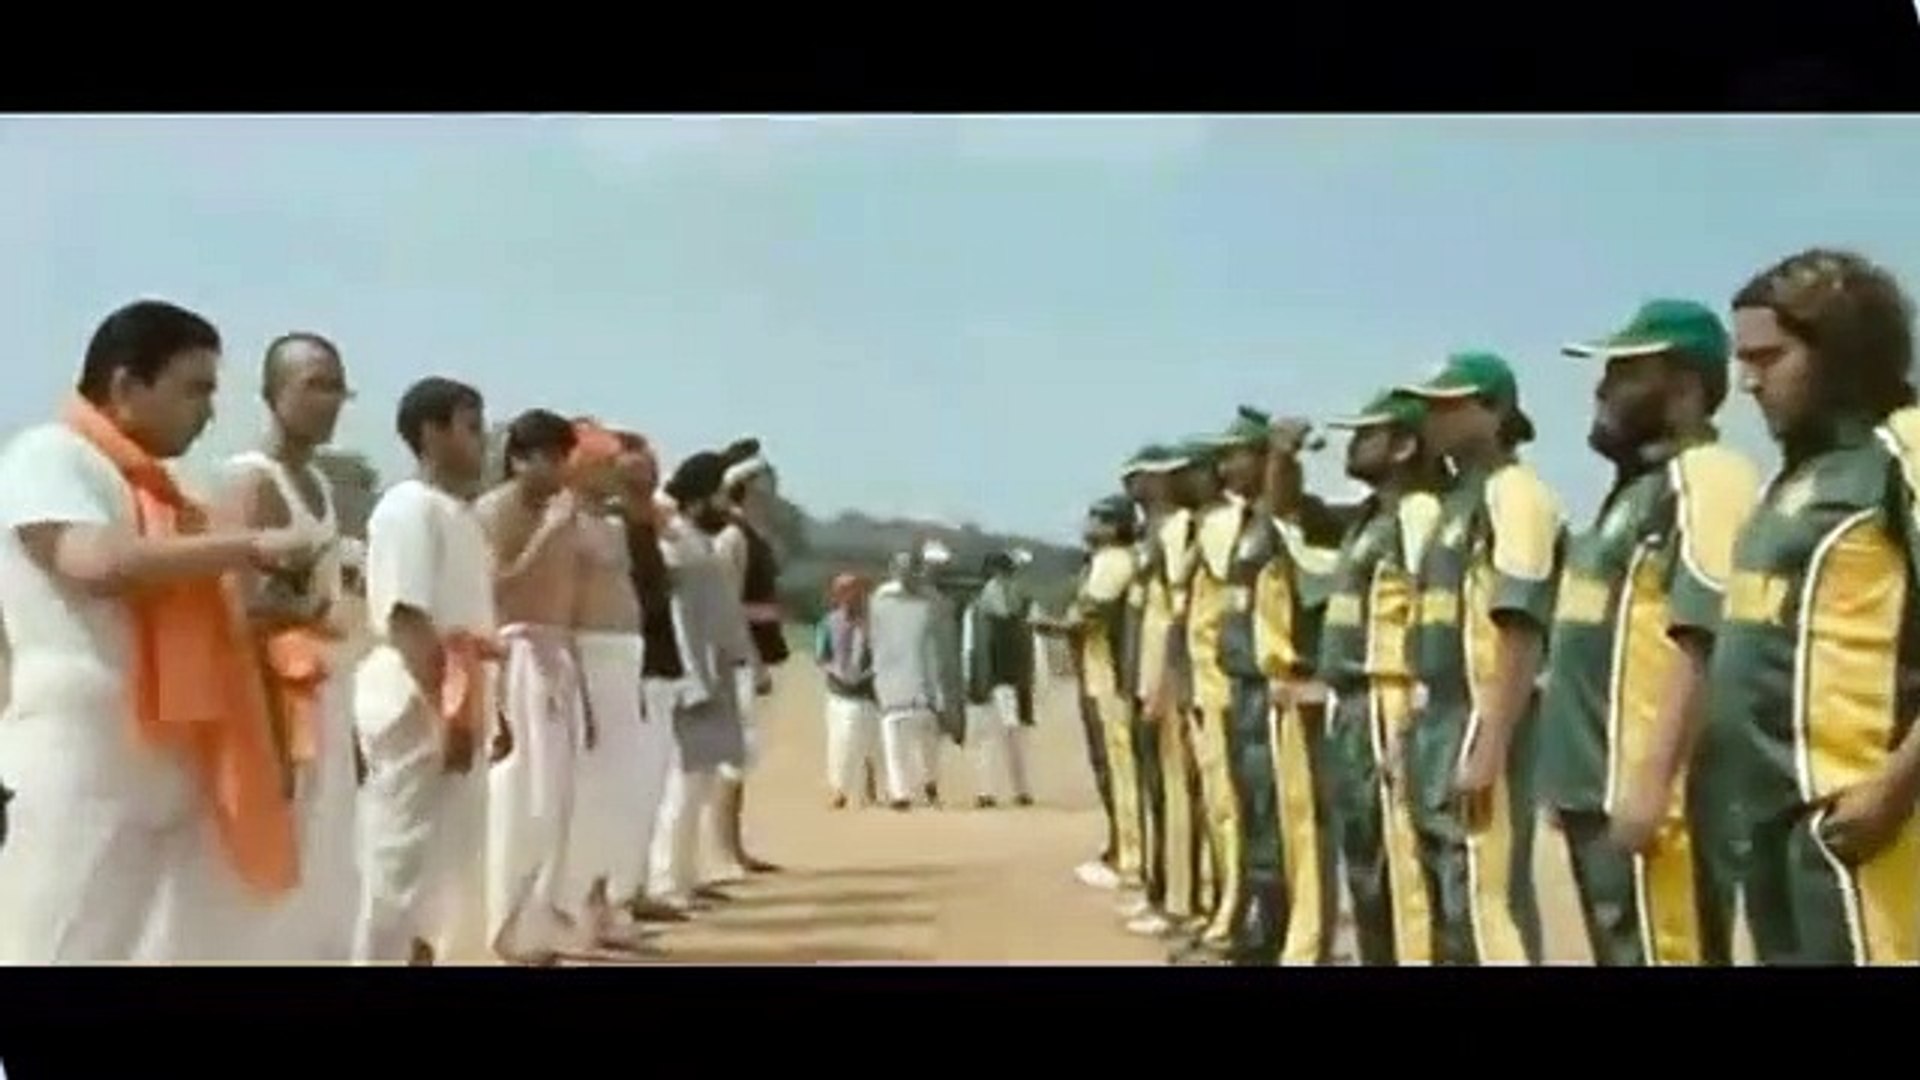 Ind Vs Pak Funny Cricket Match Video, By Johny Lever, Sonu Sood, Soha Ali Khan,